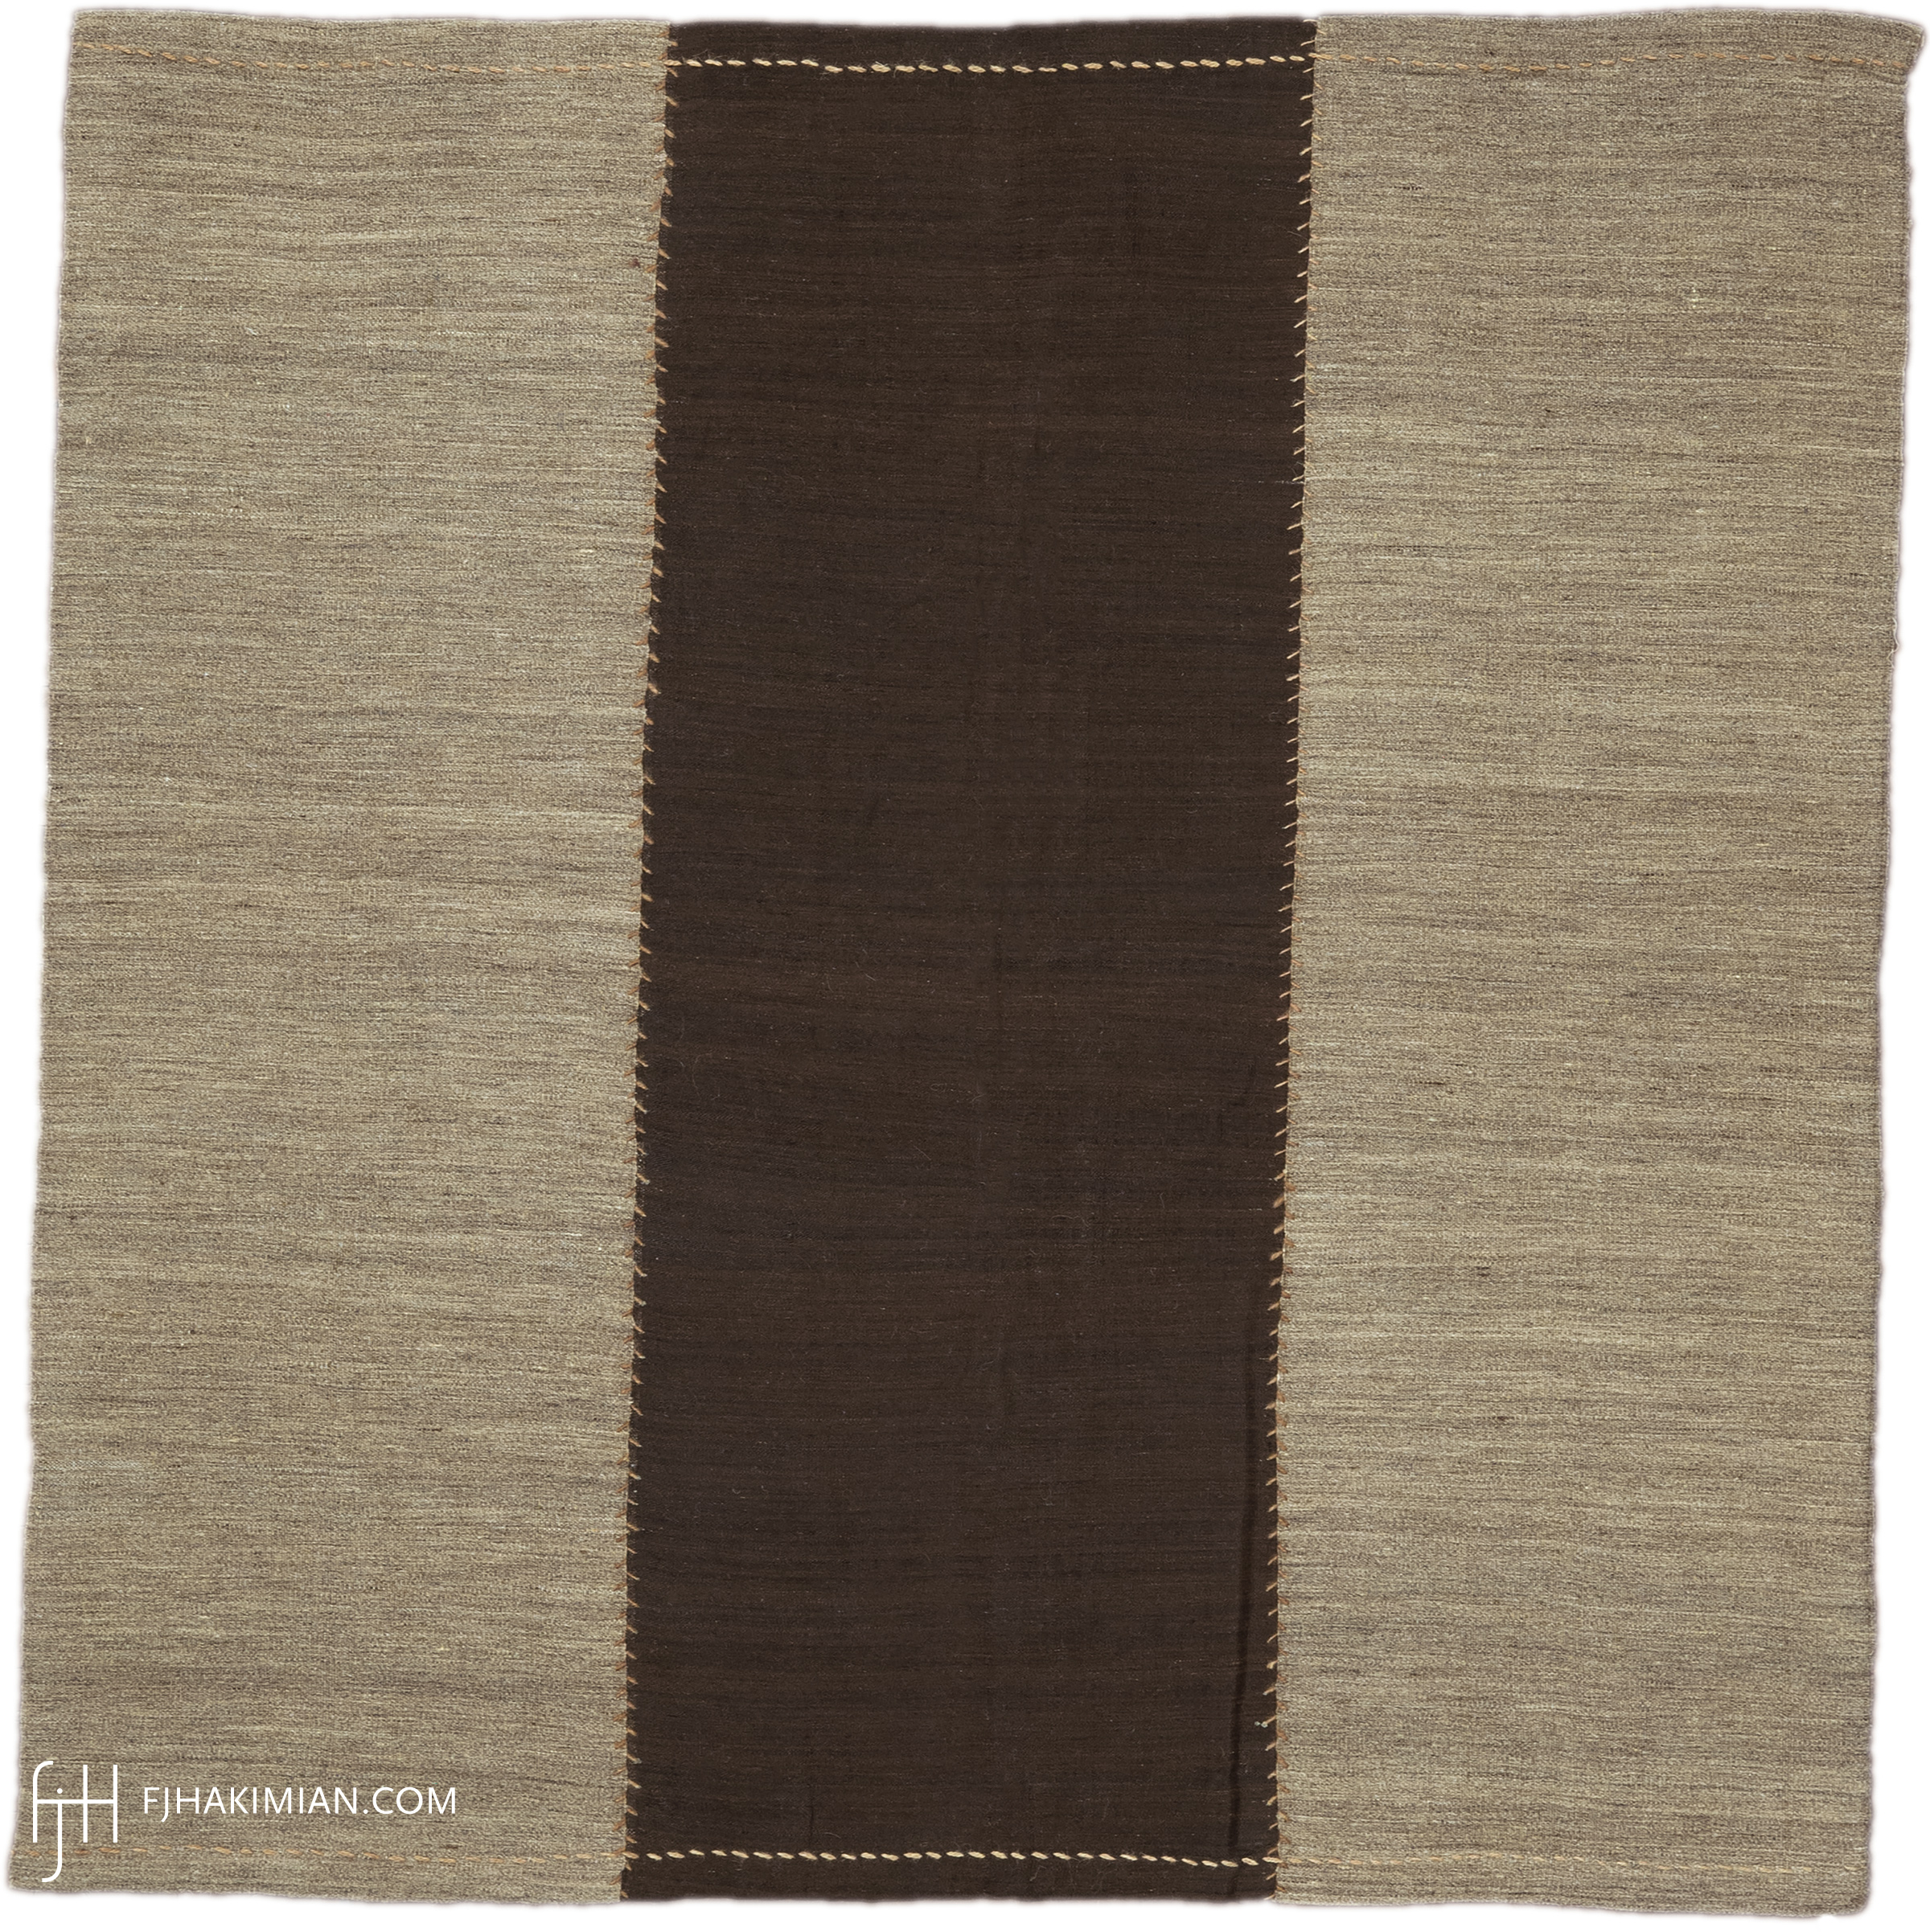 FJ Hakimian | 23016 | Vintage Kilim Carpet